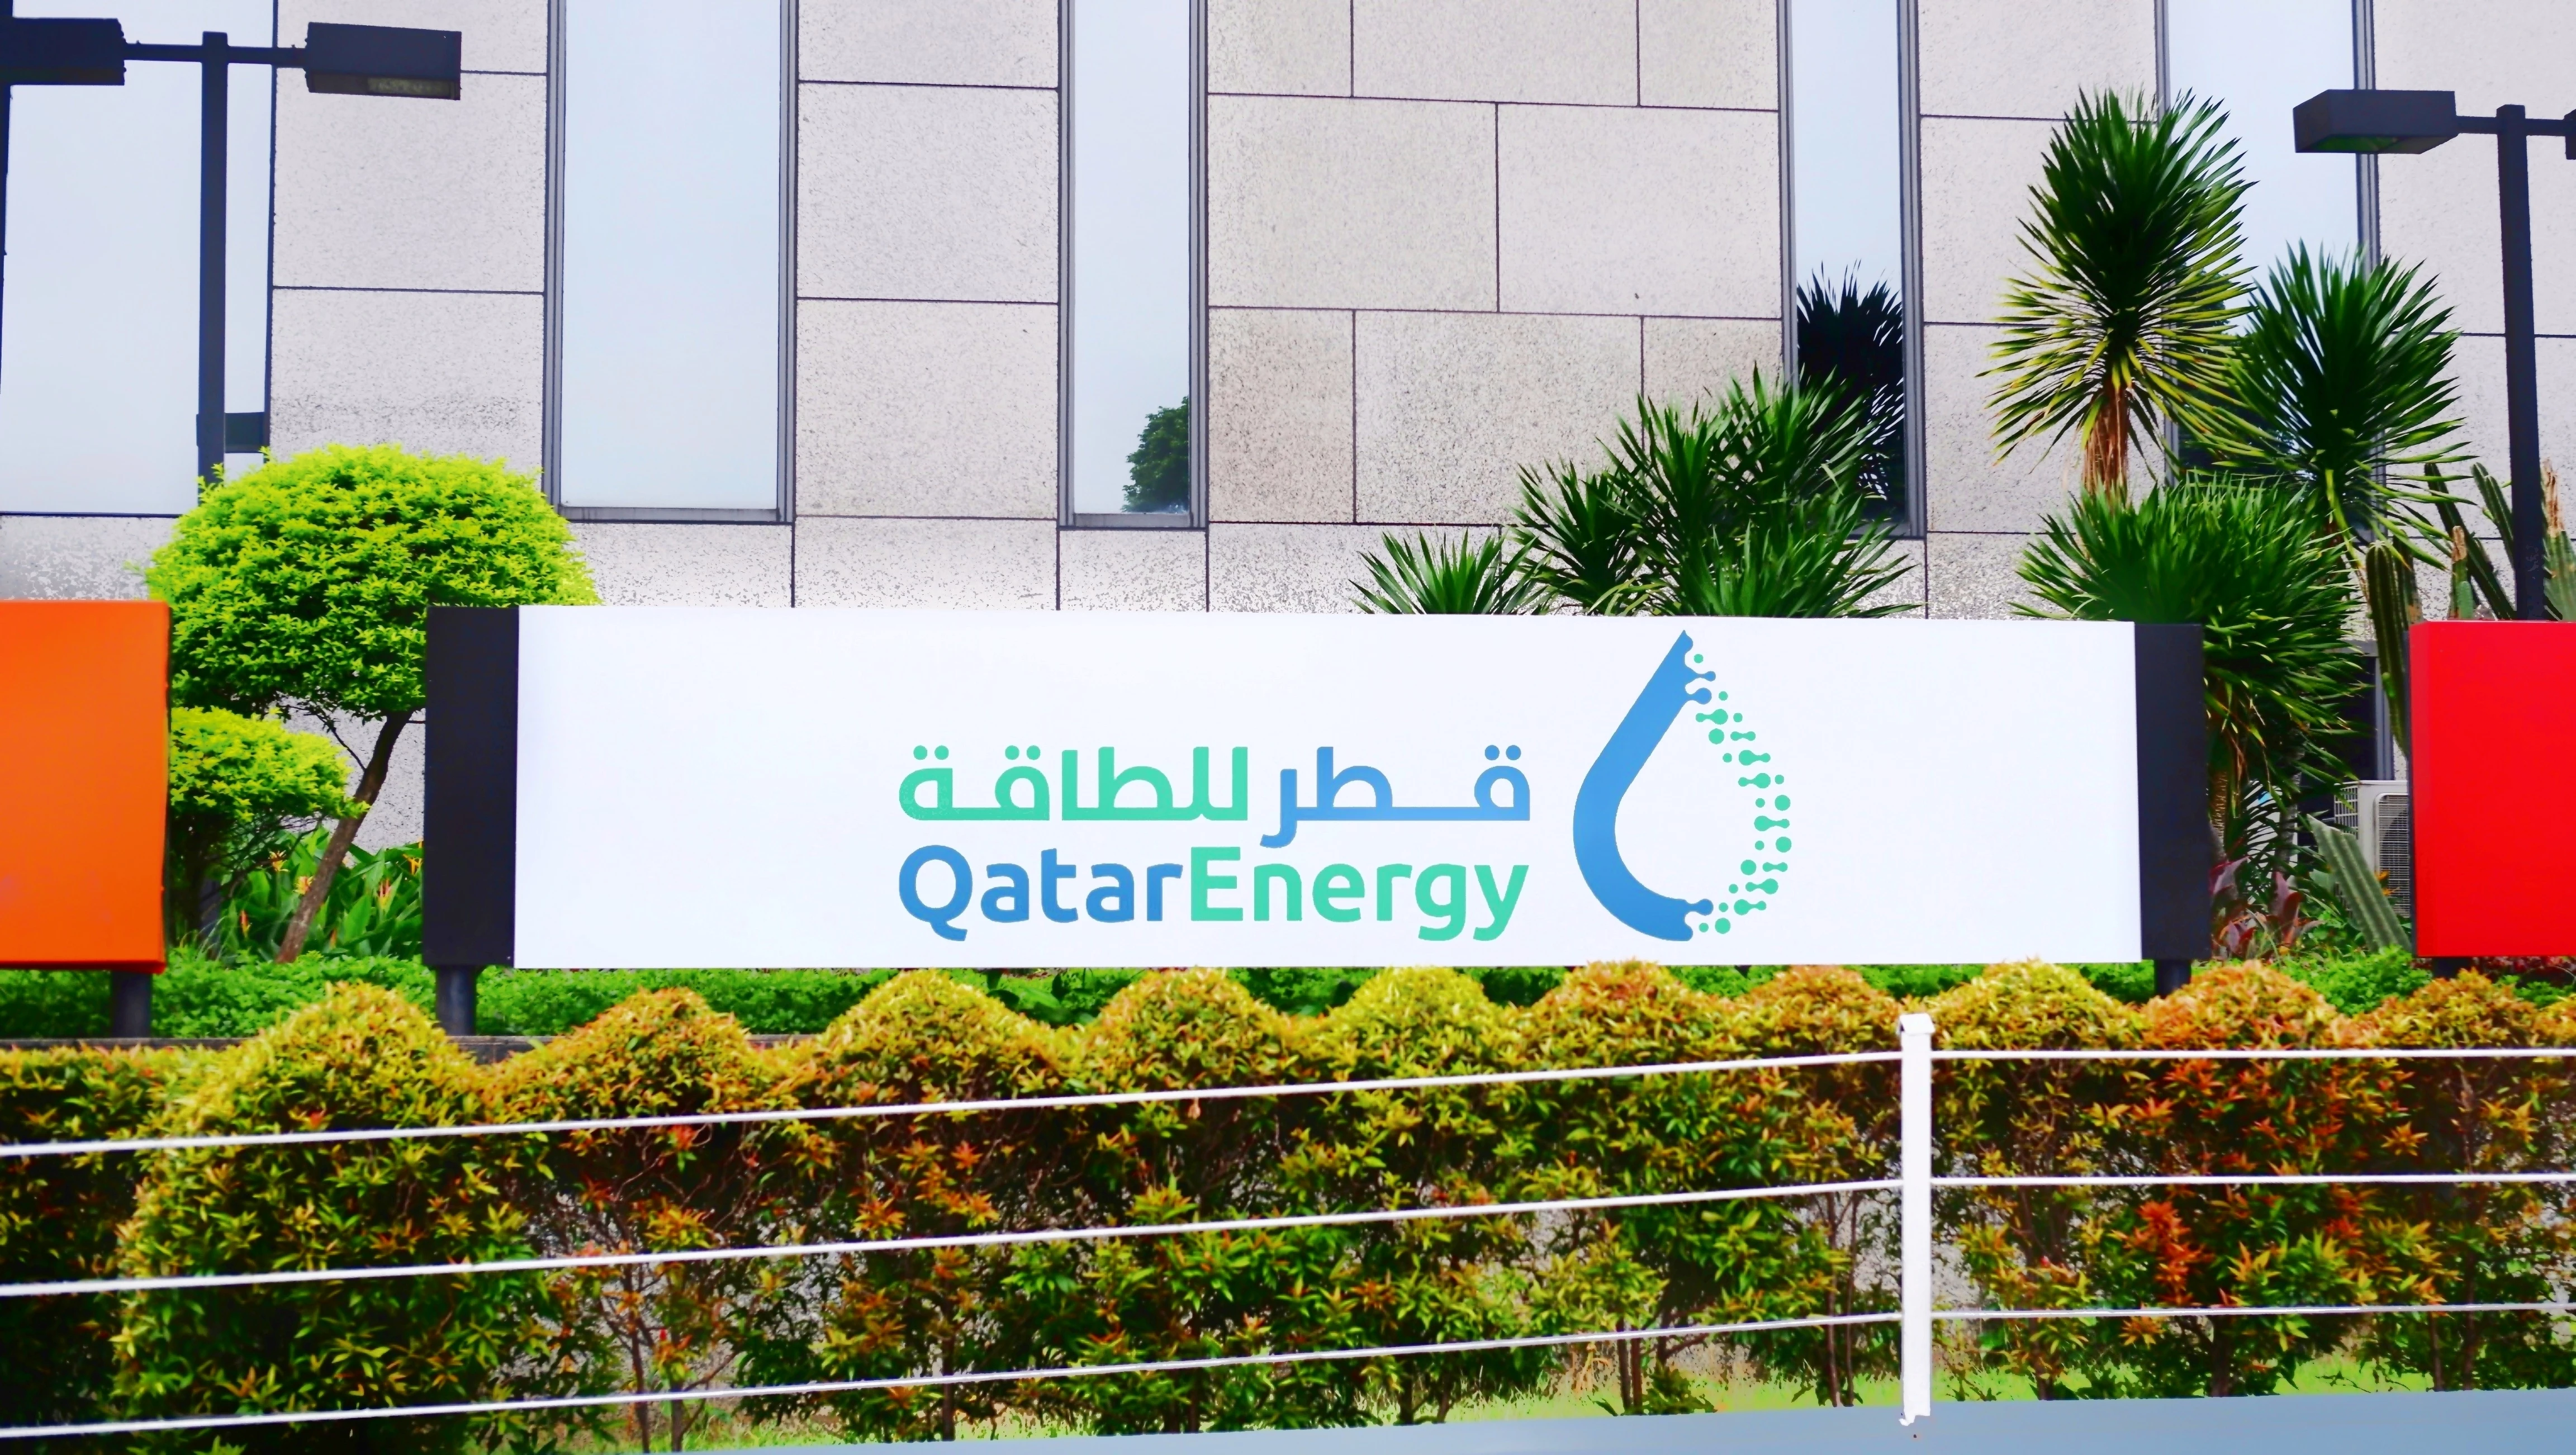 image is Qatarenergy